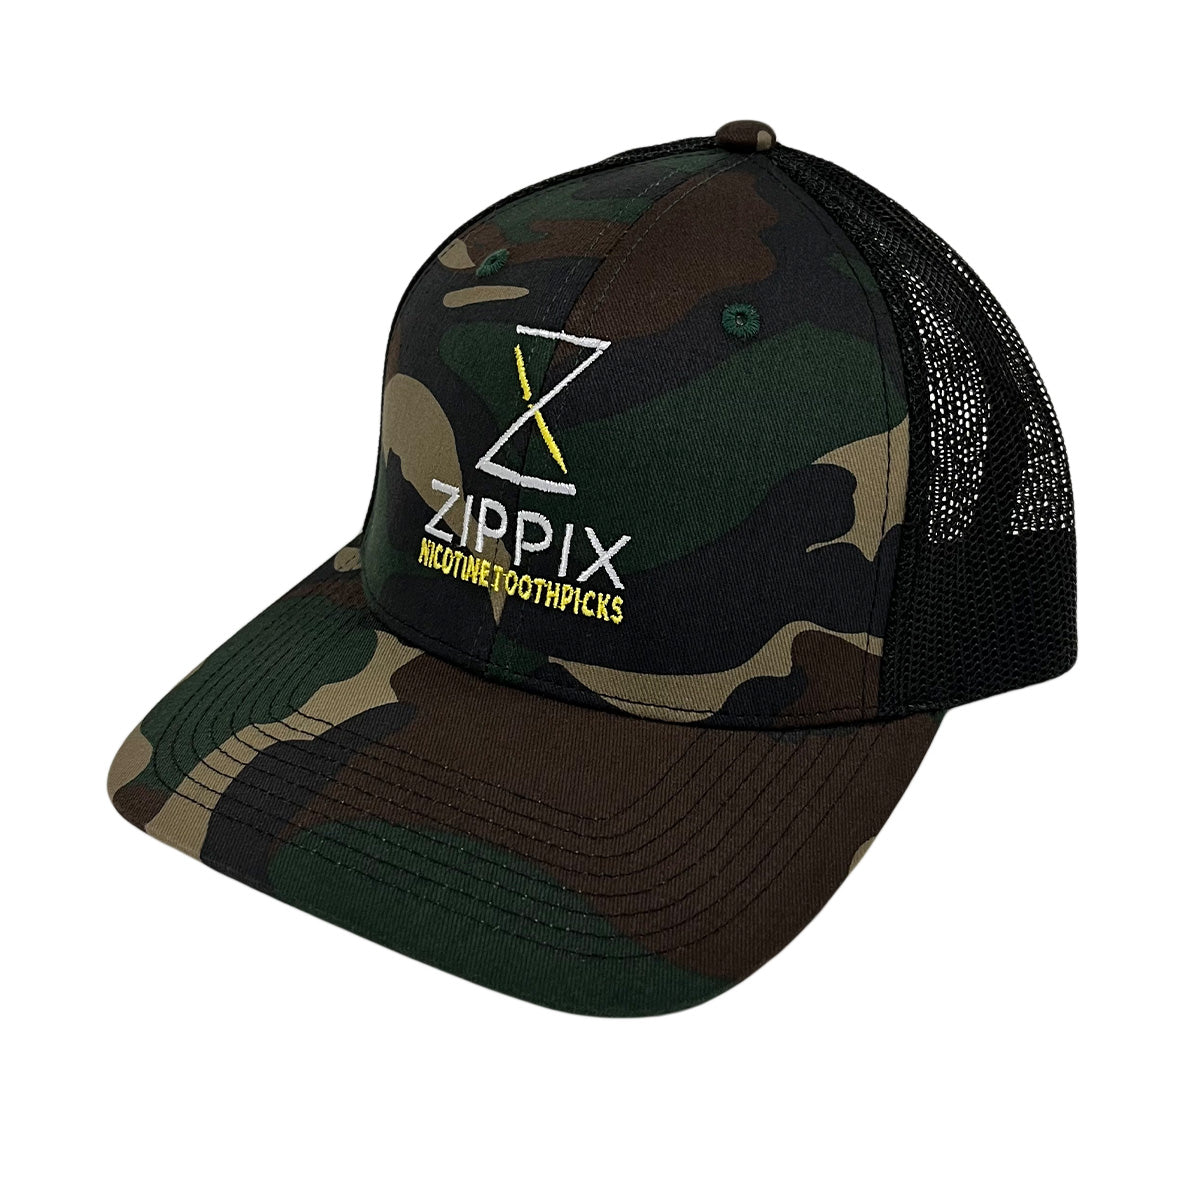 Zippix SnapBack Hats